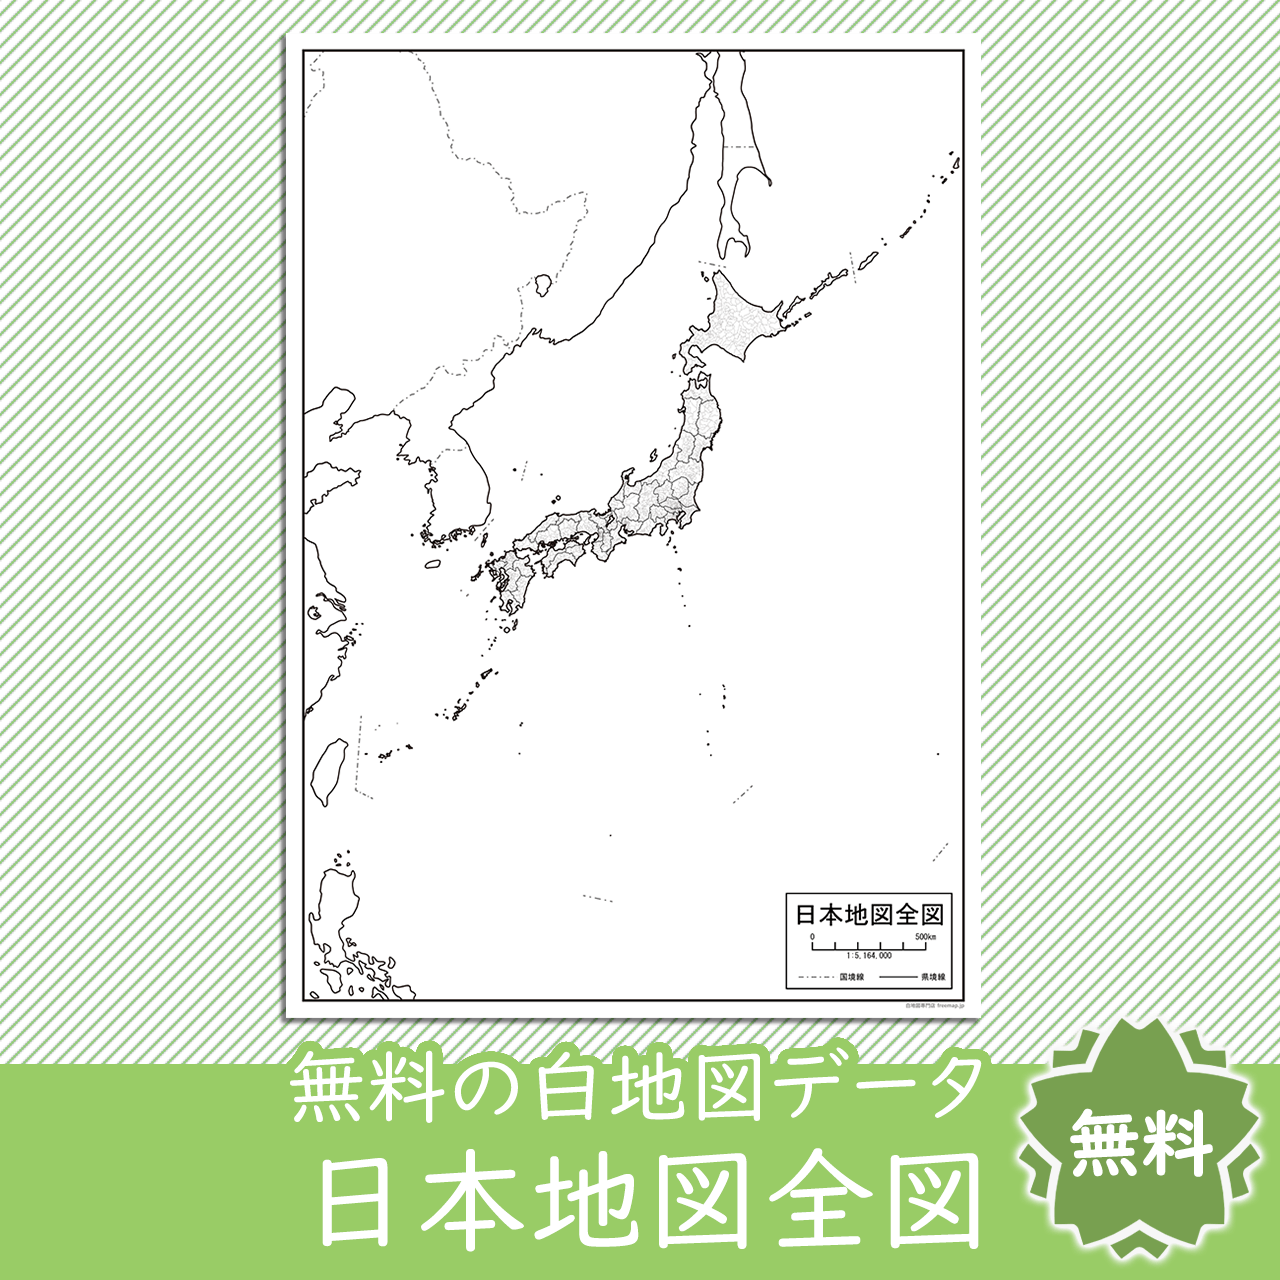 日本地図全図のサムネイル